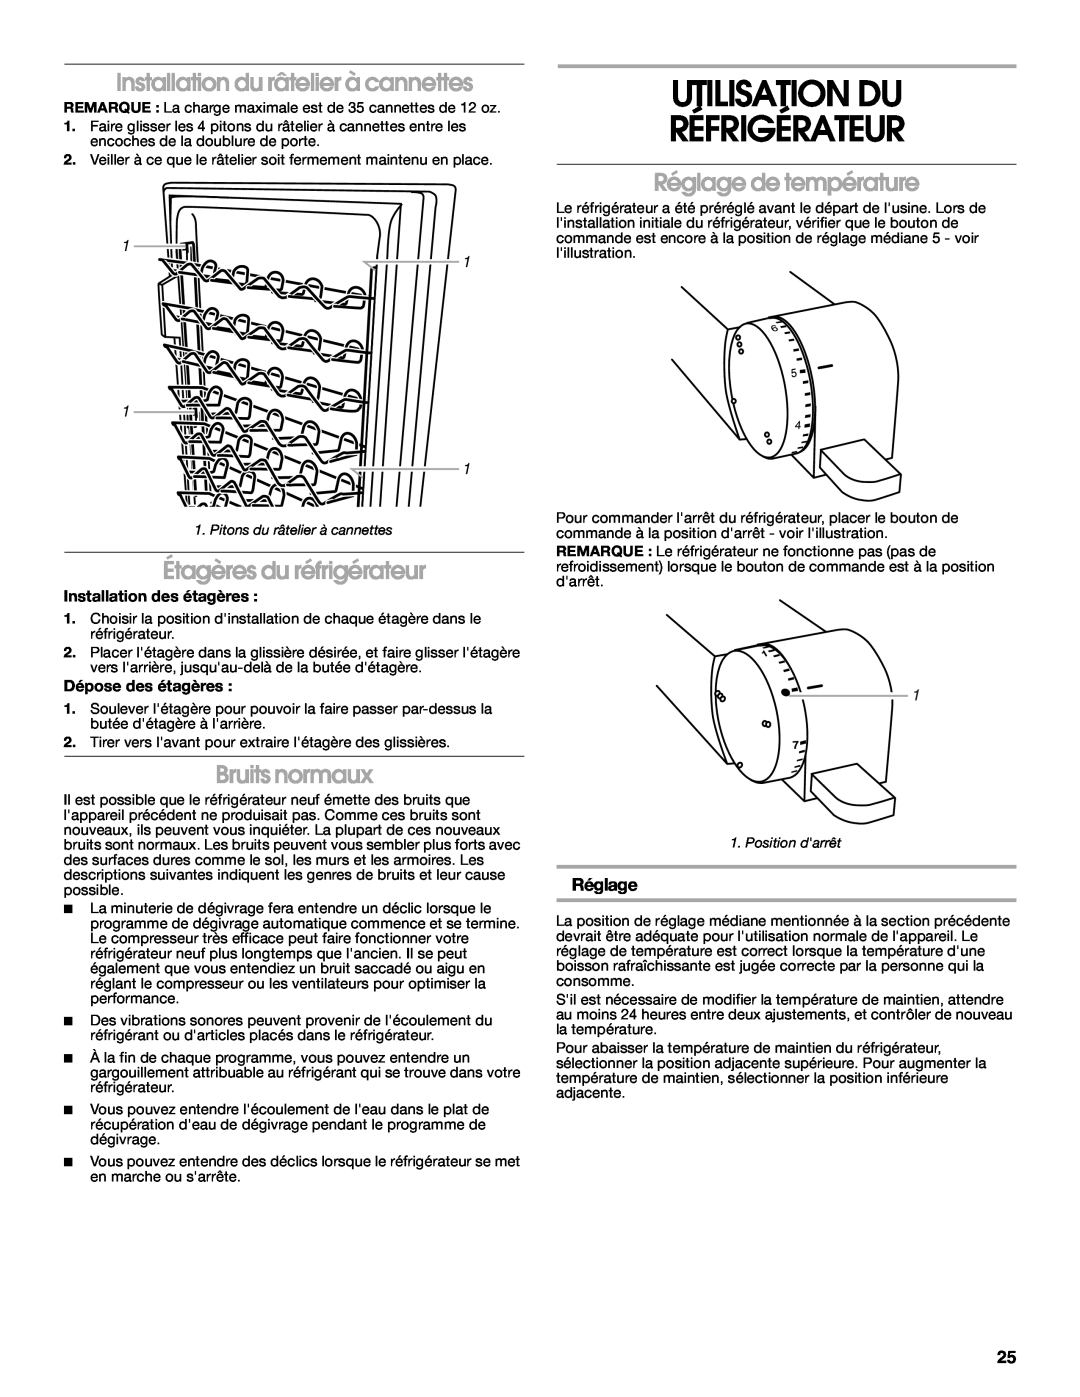 Whirlpool GARF06XXMG00 manual Utilisation Du Réfrigérateur, Installation du râtelier à cannettes, Étagères du réfrigérateur 